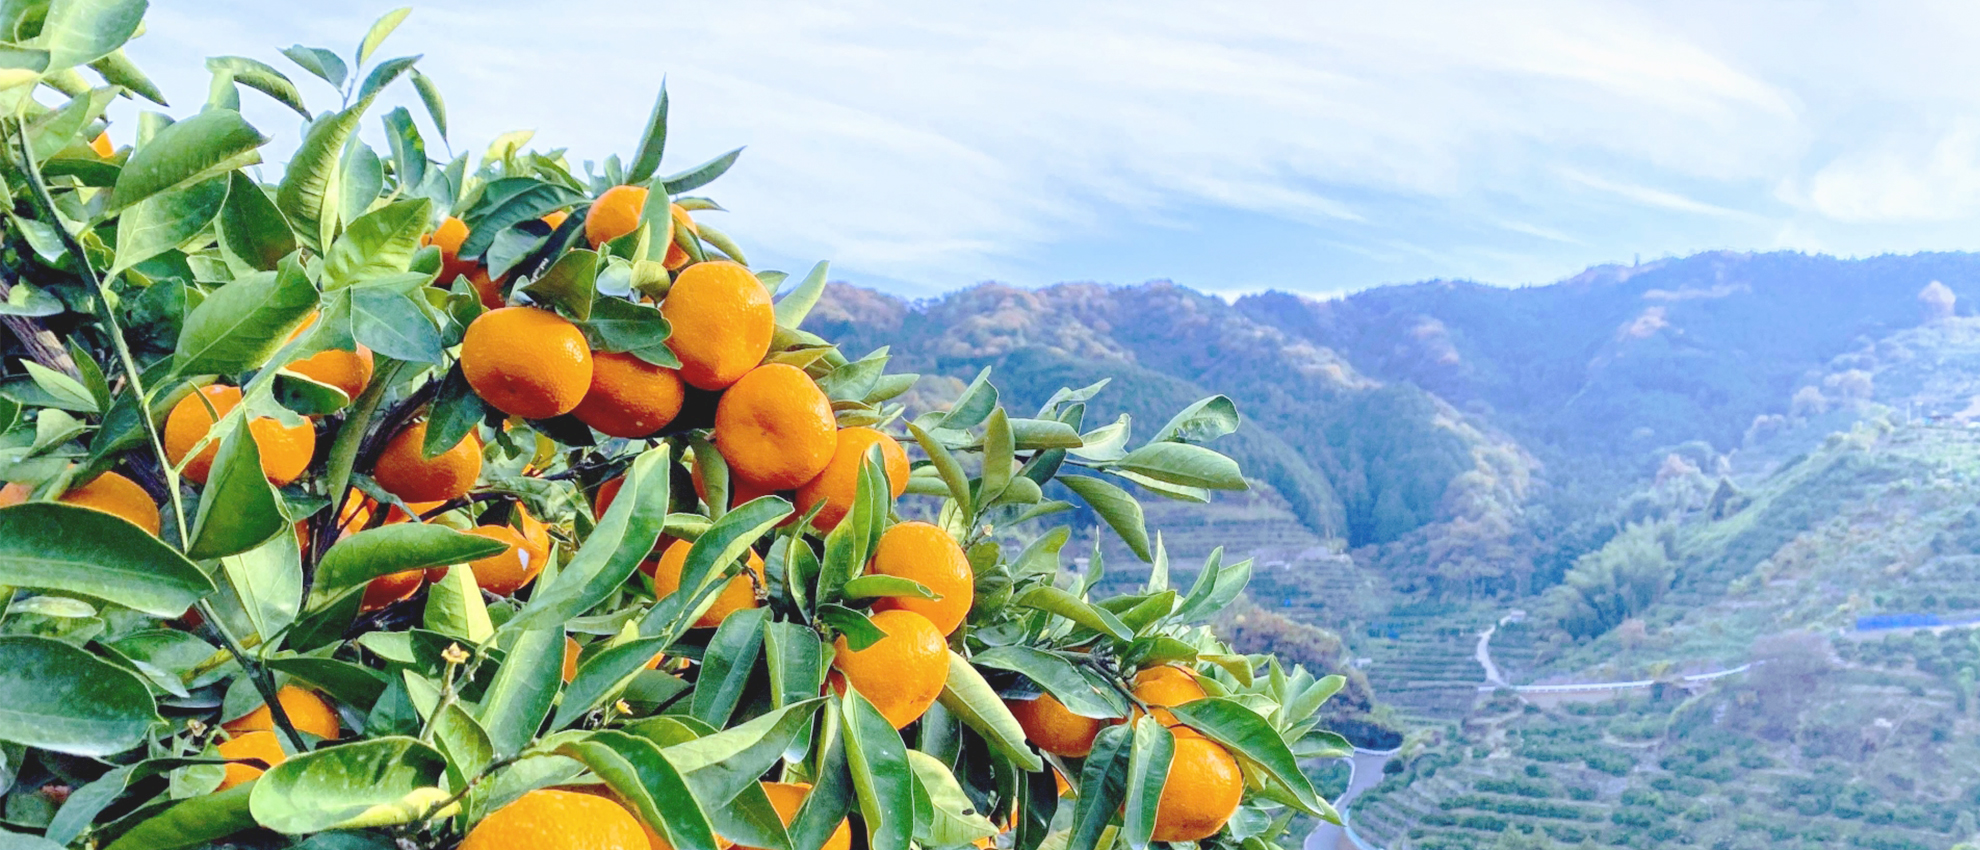 愛媛県宇和島市の柑橘類を⾒守りながら⾃社⼯場で製造しています